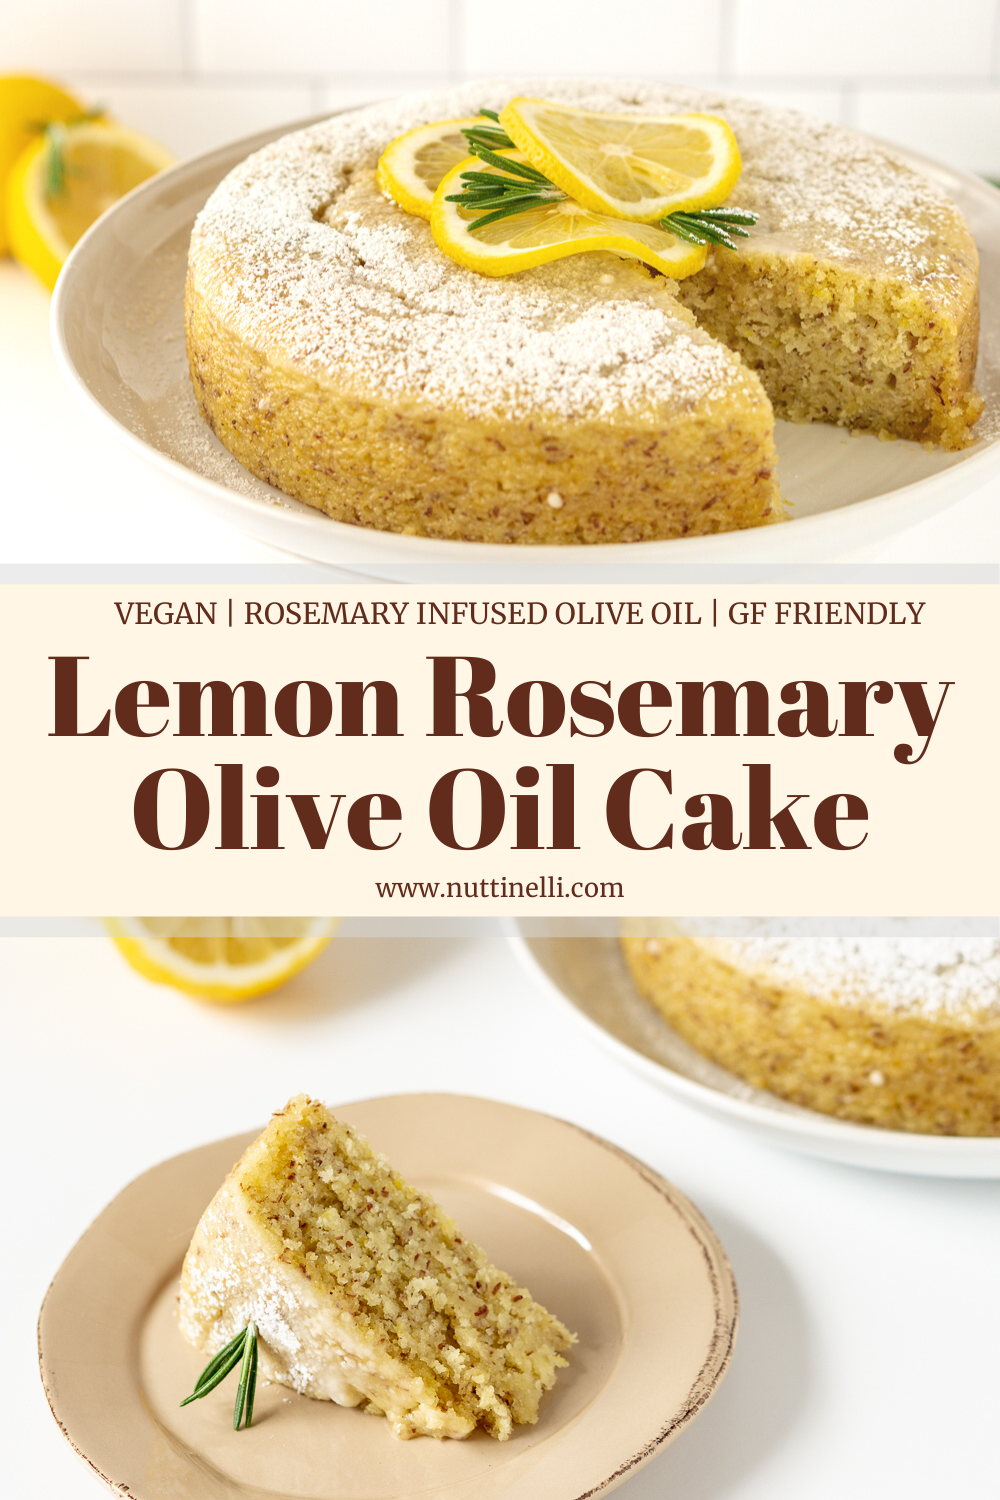 Vegan Lemon Rosemary Olive Oil Cake - Deliciously Tart and Sweet!